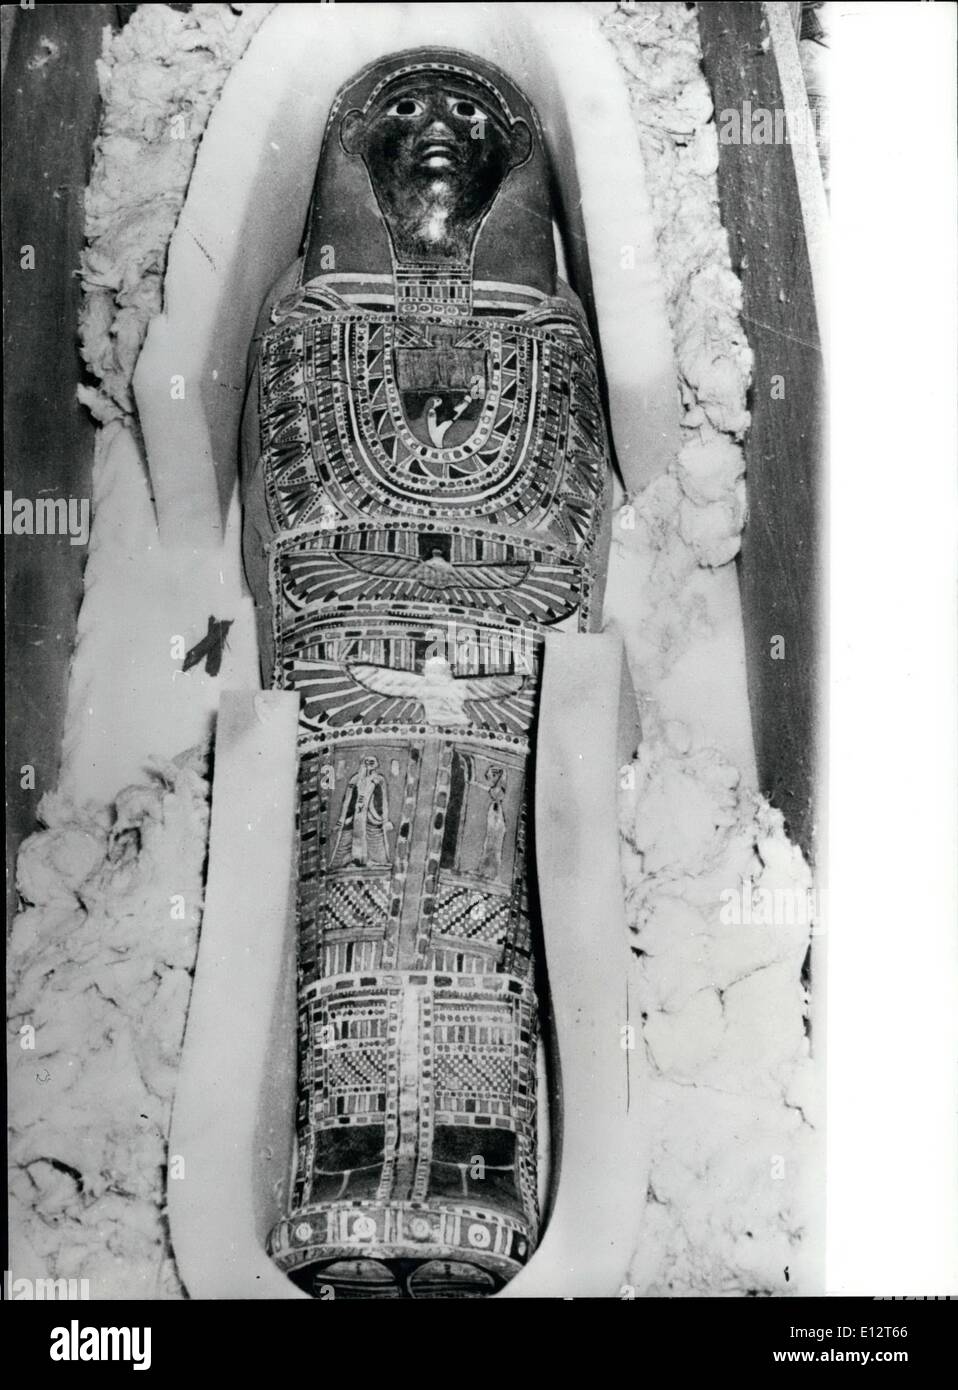 25. Februar 2012 - zwei antike ägyptischen Friedhöfen ausgegraben.: vor kurzem haben zwei pharaonischen Friedhöfe in der Nähe von Kom Ombo Tempel Oberägypten, Bnn ausgegraben. Sie wurden gefunden, bestehend aus einigen 250 Gräber von eine Reihe von alten ägyptischen Gottheiten. Arbeit zu graben begann seit dem Jahr 1965. Unter den Gräbern ausgegraben wurden sechs Heiligen Alligatoren, die die Gottheit des Kom Omb Temple war. Teilen dieser Heiligen Alligator war der Heilige Geier, die auch von den alten Ägyptern verehrt wurde. Ein Alligator-Ei in diese Friedhöfe sowie eine Reihe von Heiligen Schlange entdeckt wurde und auch einige mumifiziert Hirsche Stockfoto